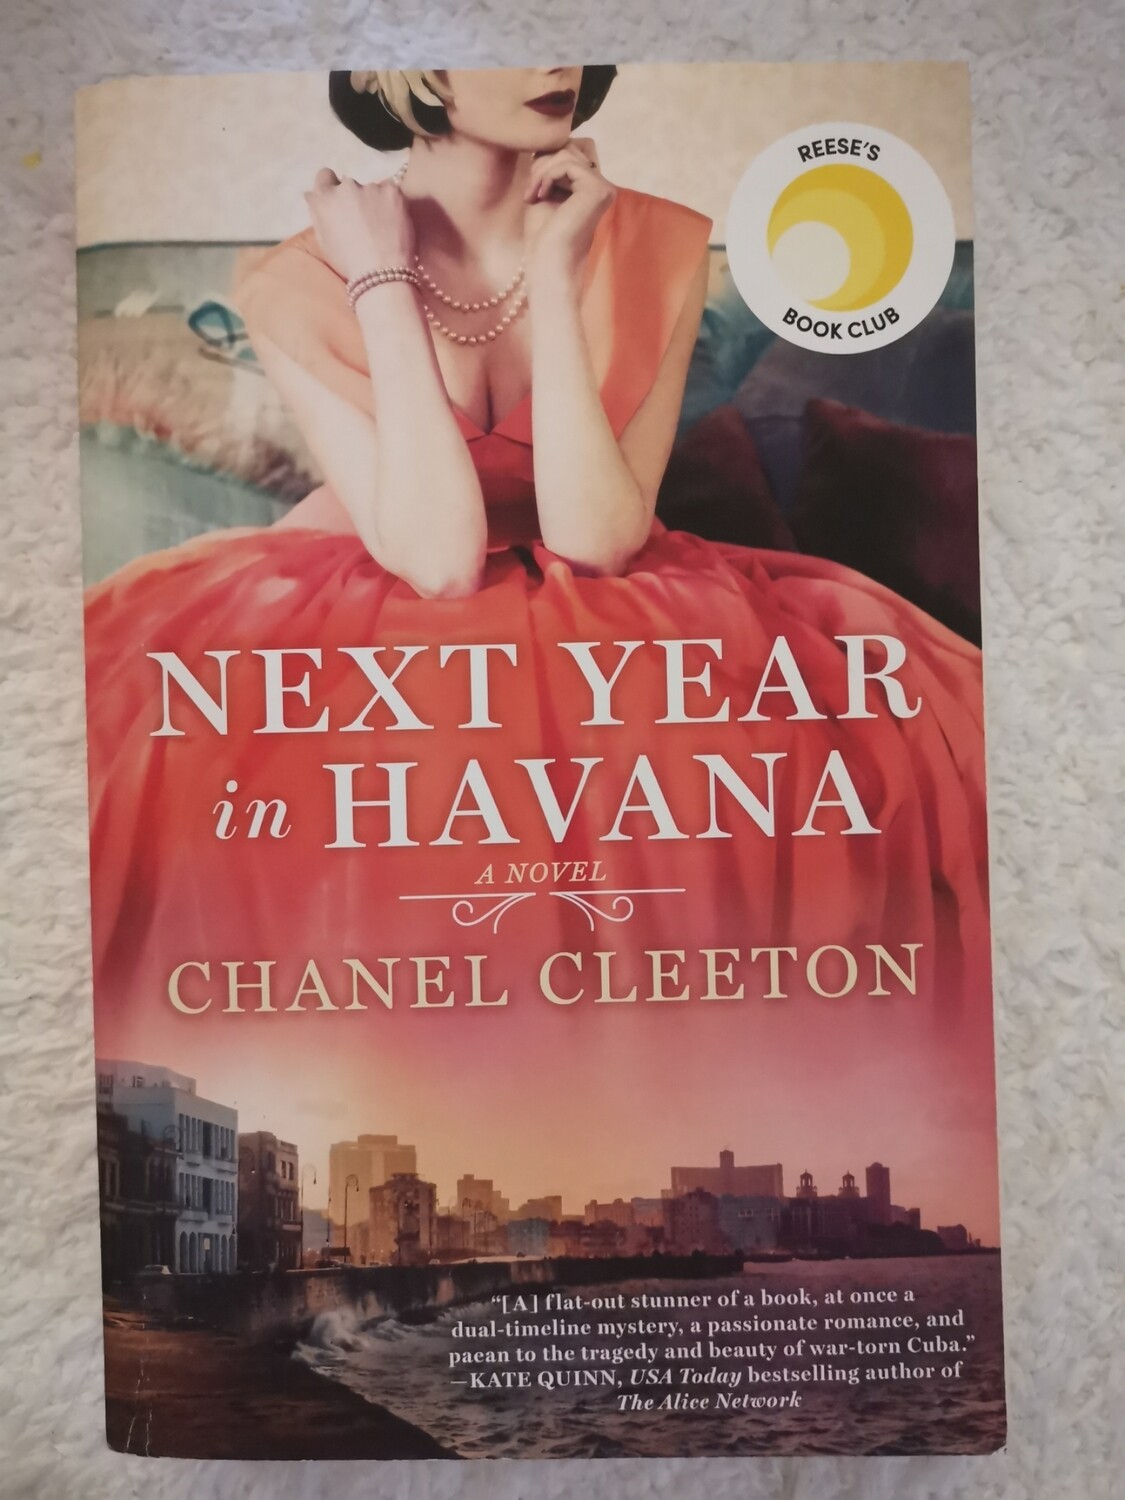 Next year in Havana, Chanel Cleeton